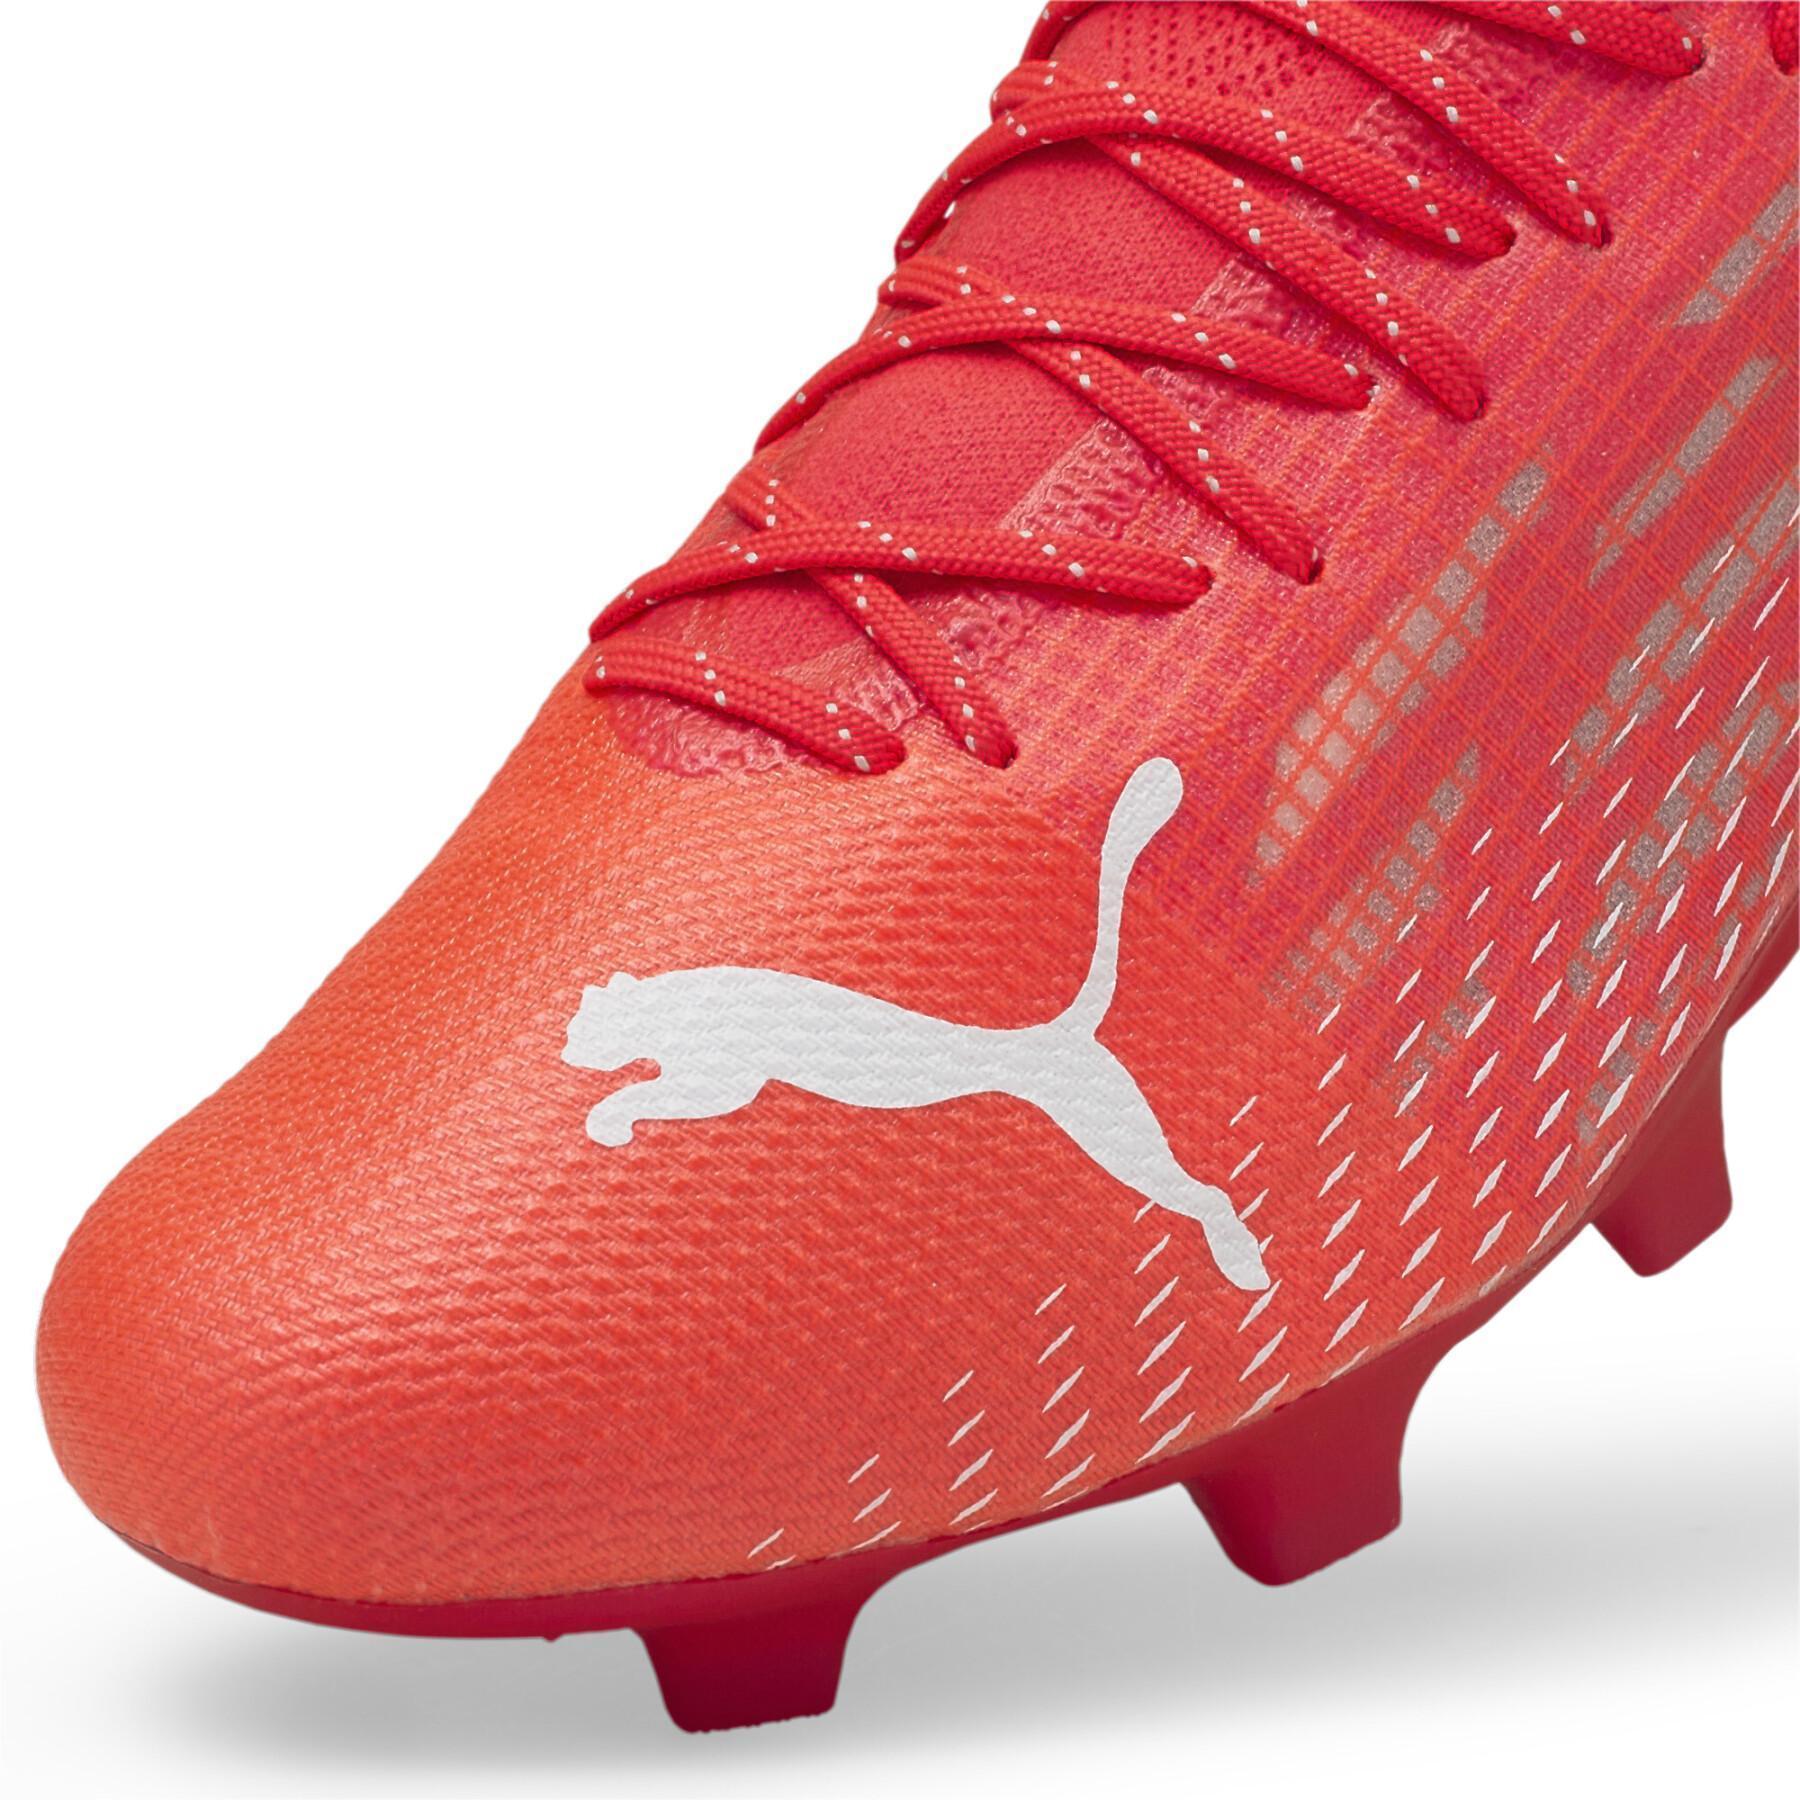 Soccer shoes Puma Ultra 1.3 FG/AG